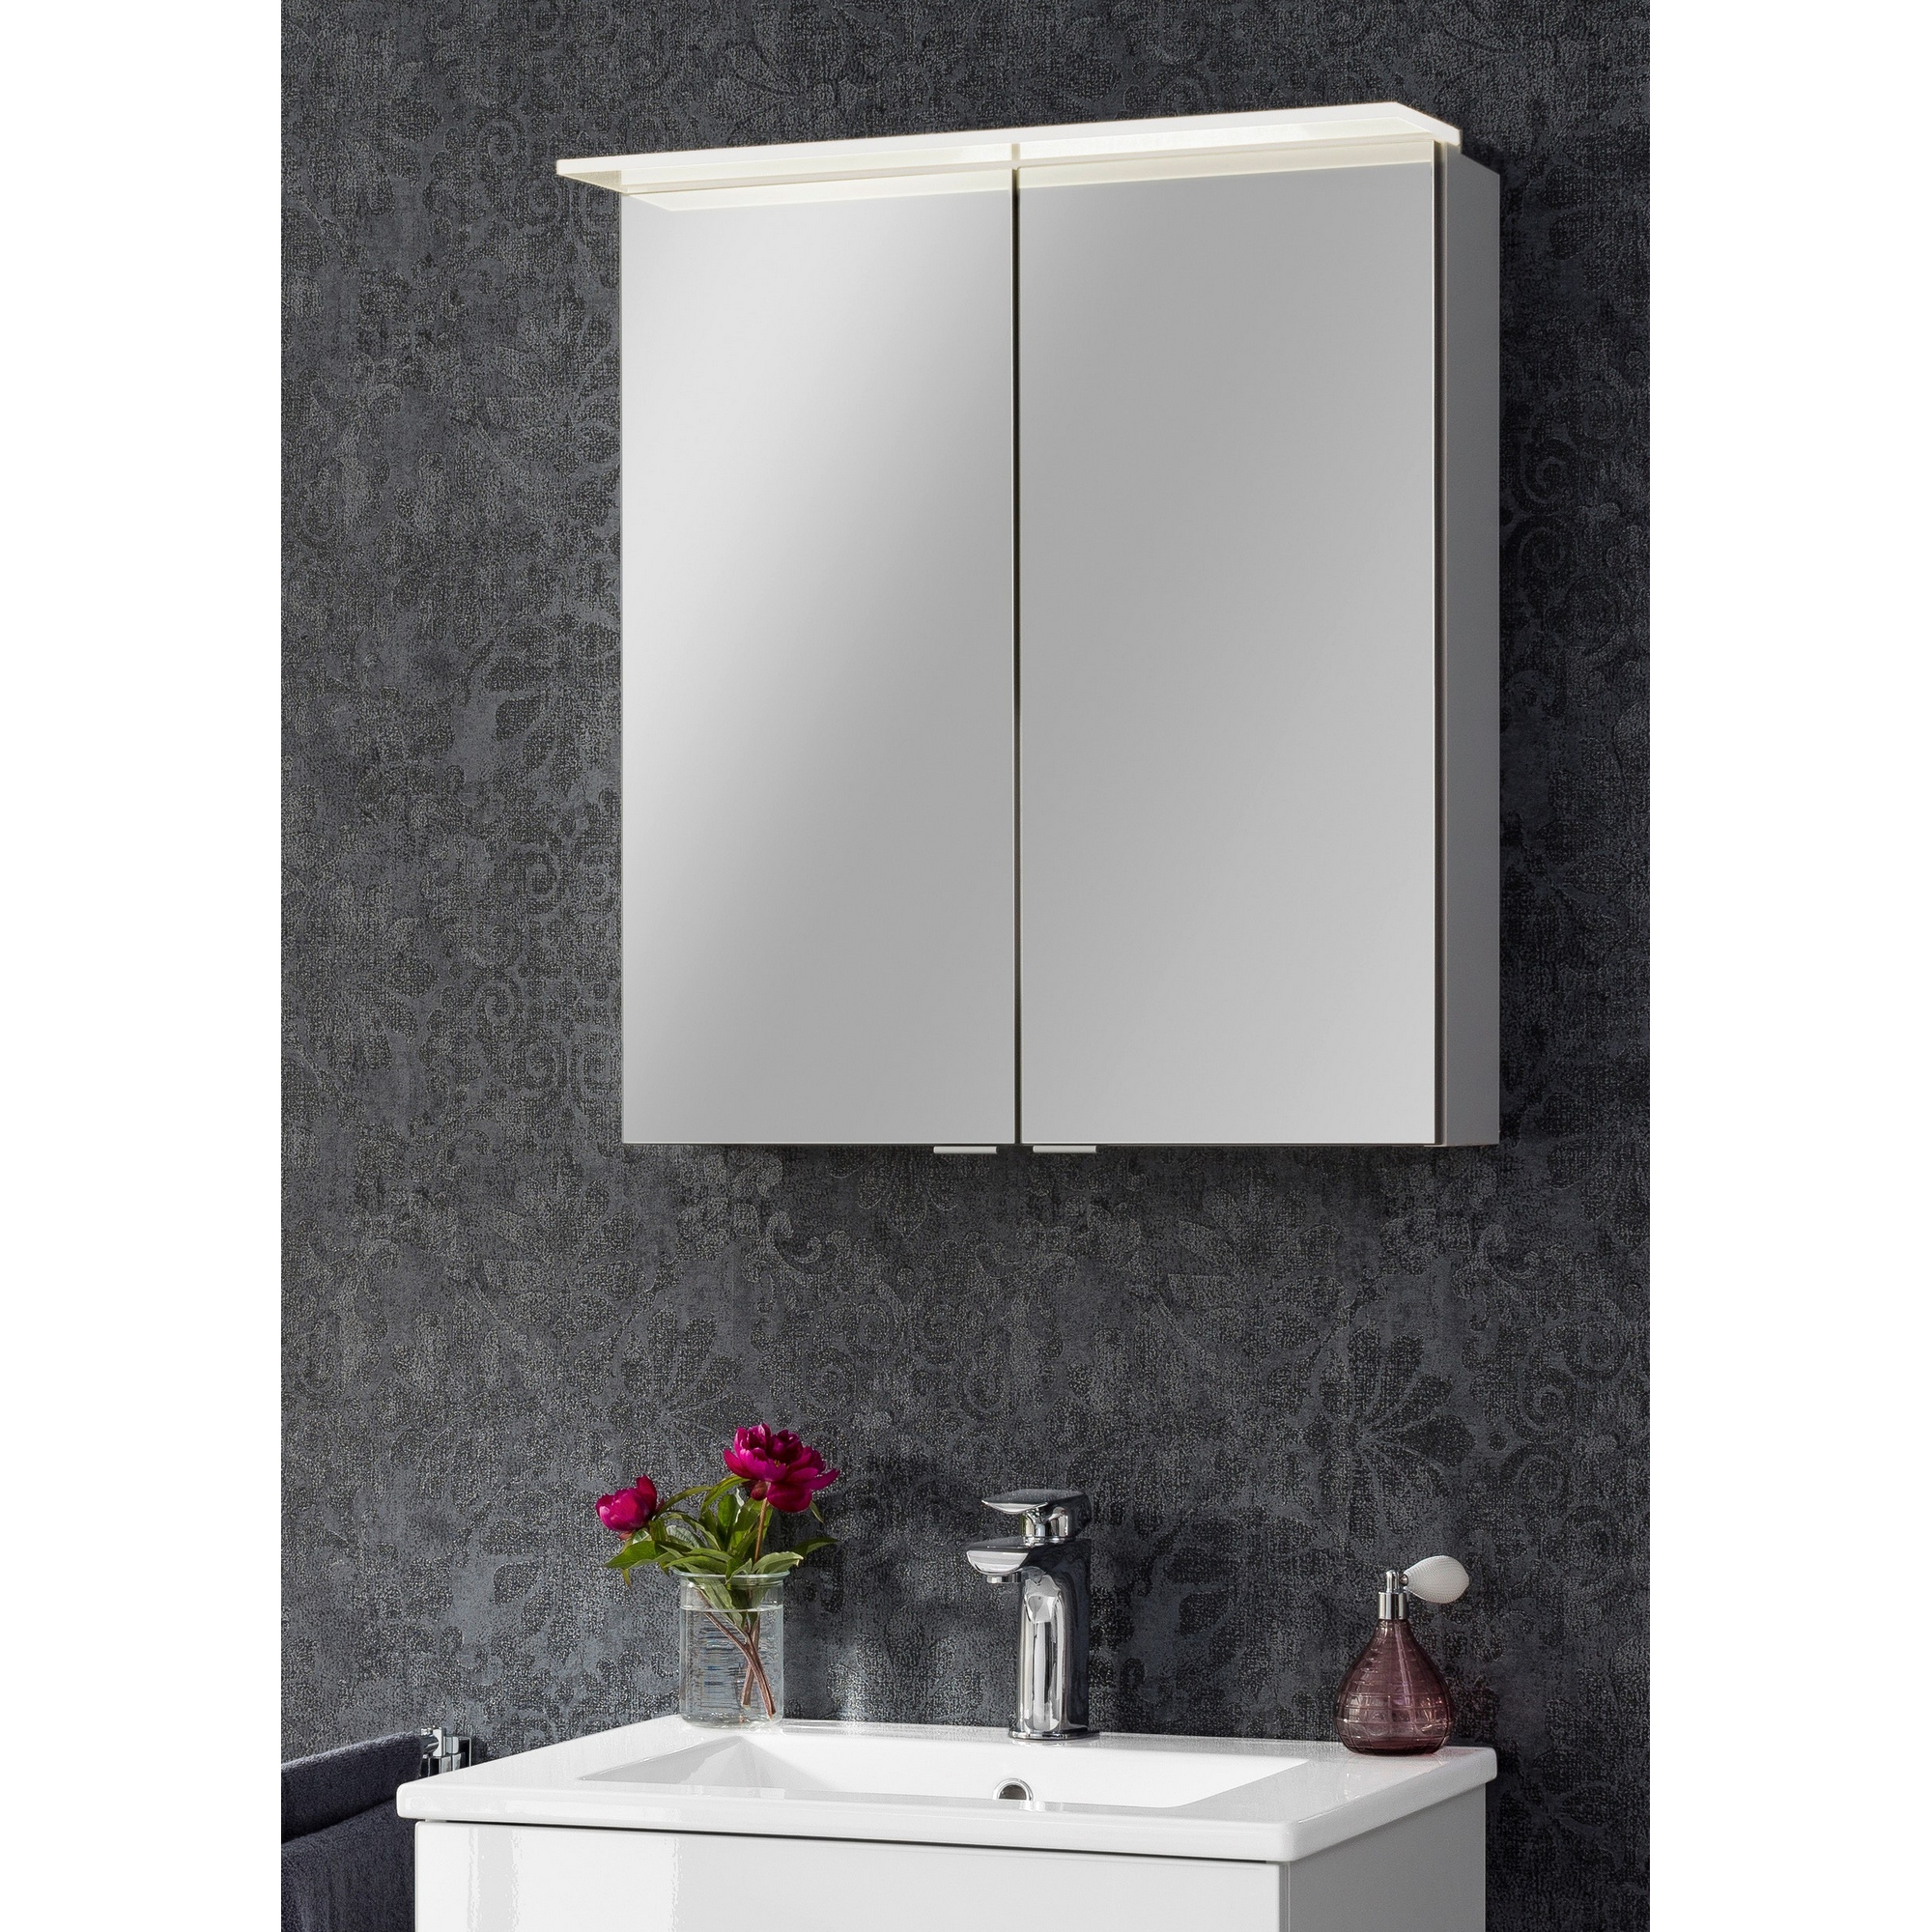 LED-Spiegelschrank 'B.Perfekt' weiß 60 x 69,4 x 15,2 cm + product picture